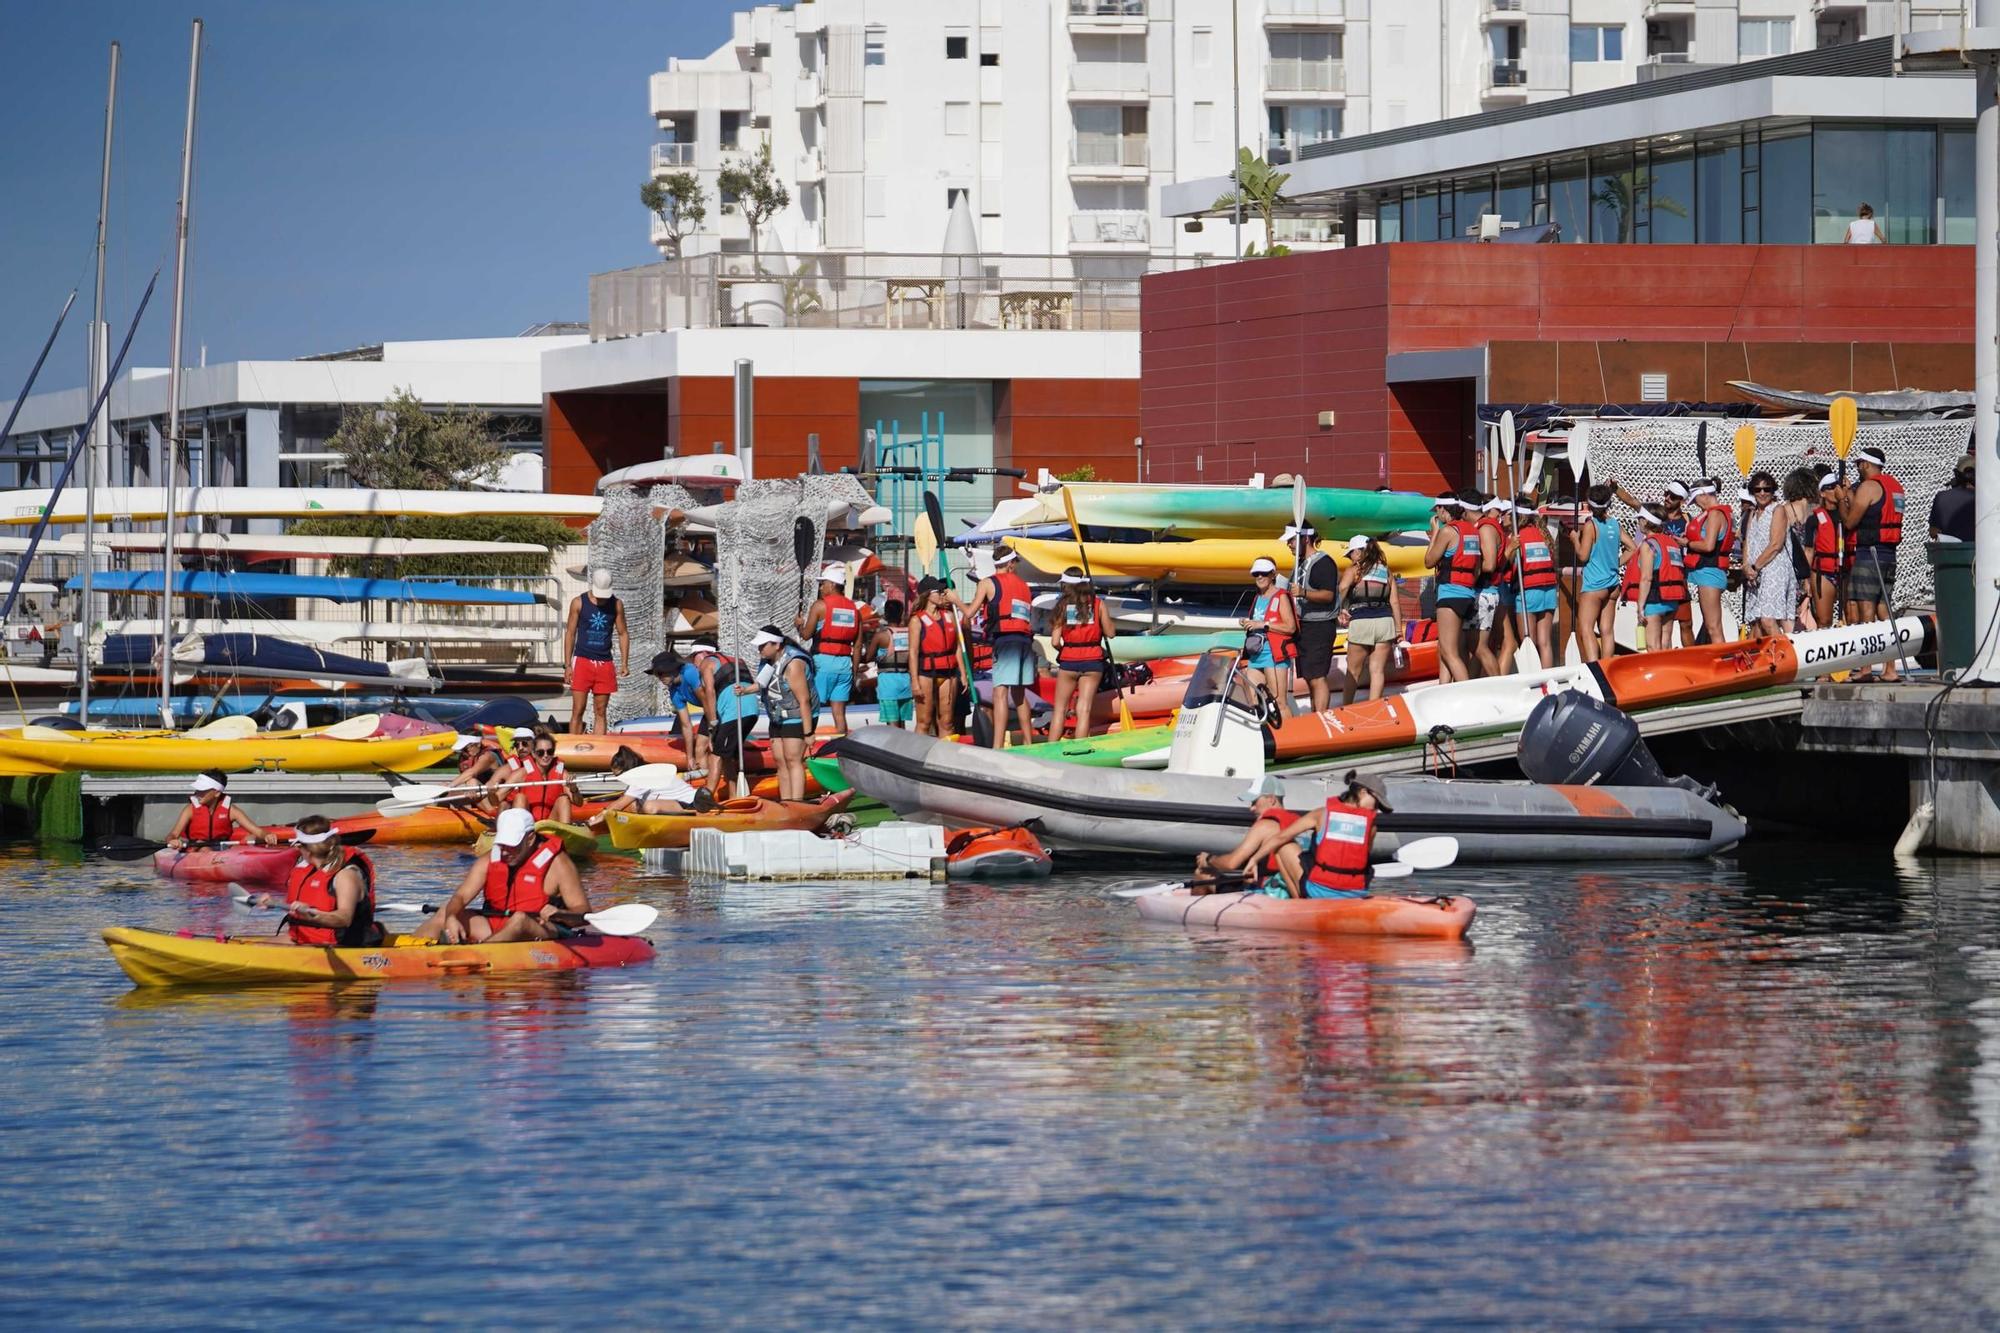 Mira aquí todas las imágenes del Día de la Piragua en Ibiza